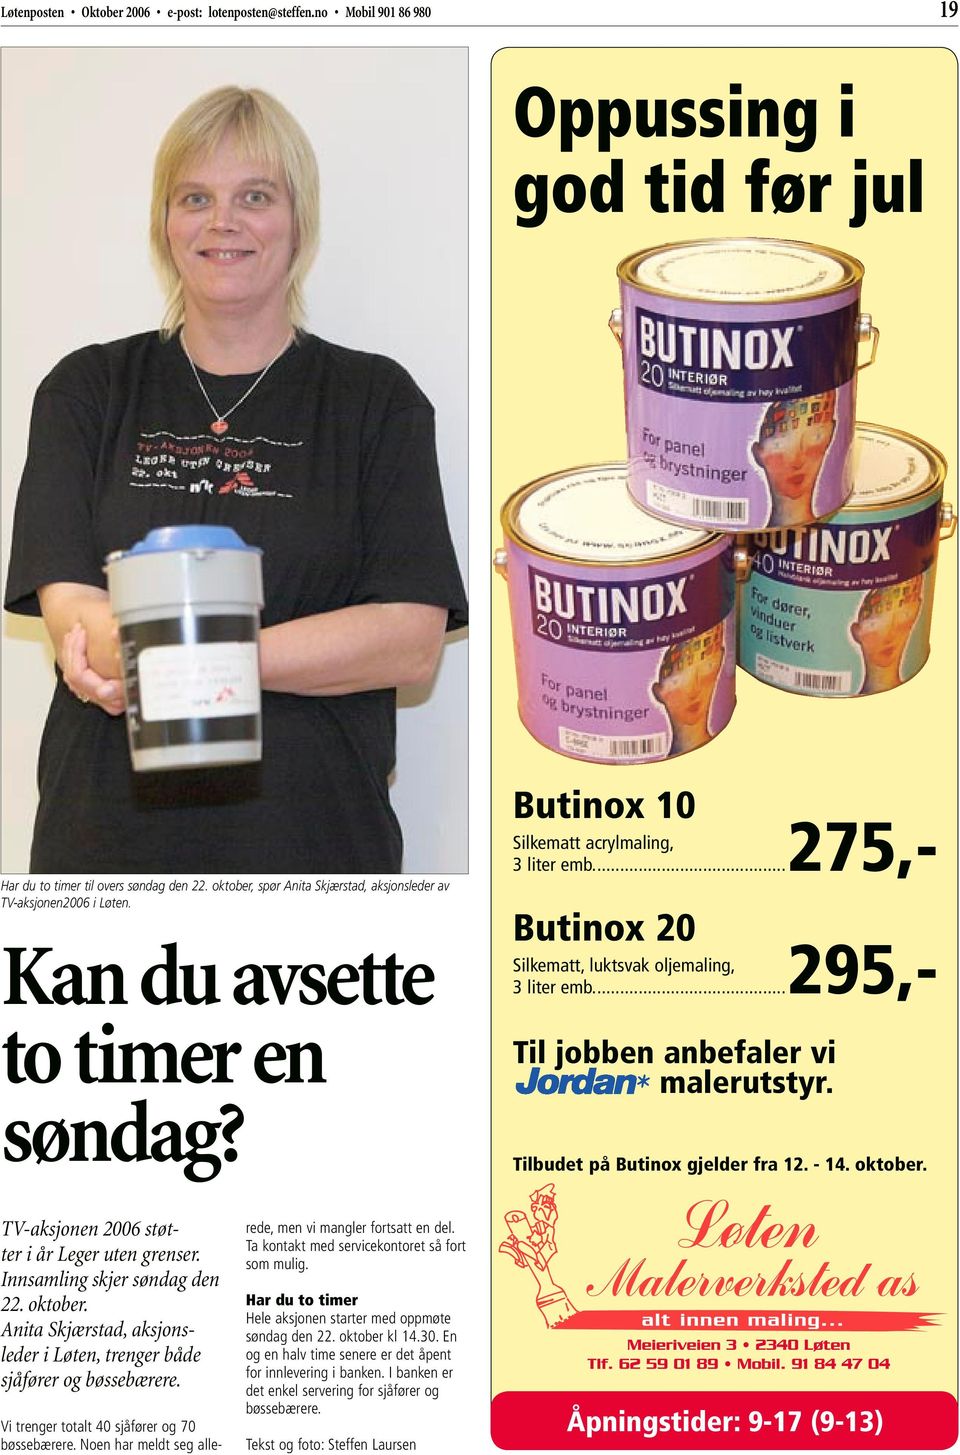 Anita Skjærstad, aksjonsleder i Løten, trenger både sjåfører og bøssebærere. Vi trenger totalt 40 sjåfører og 70 bøssebærere.